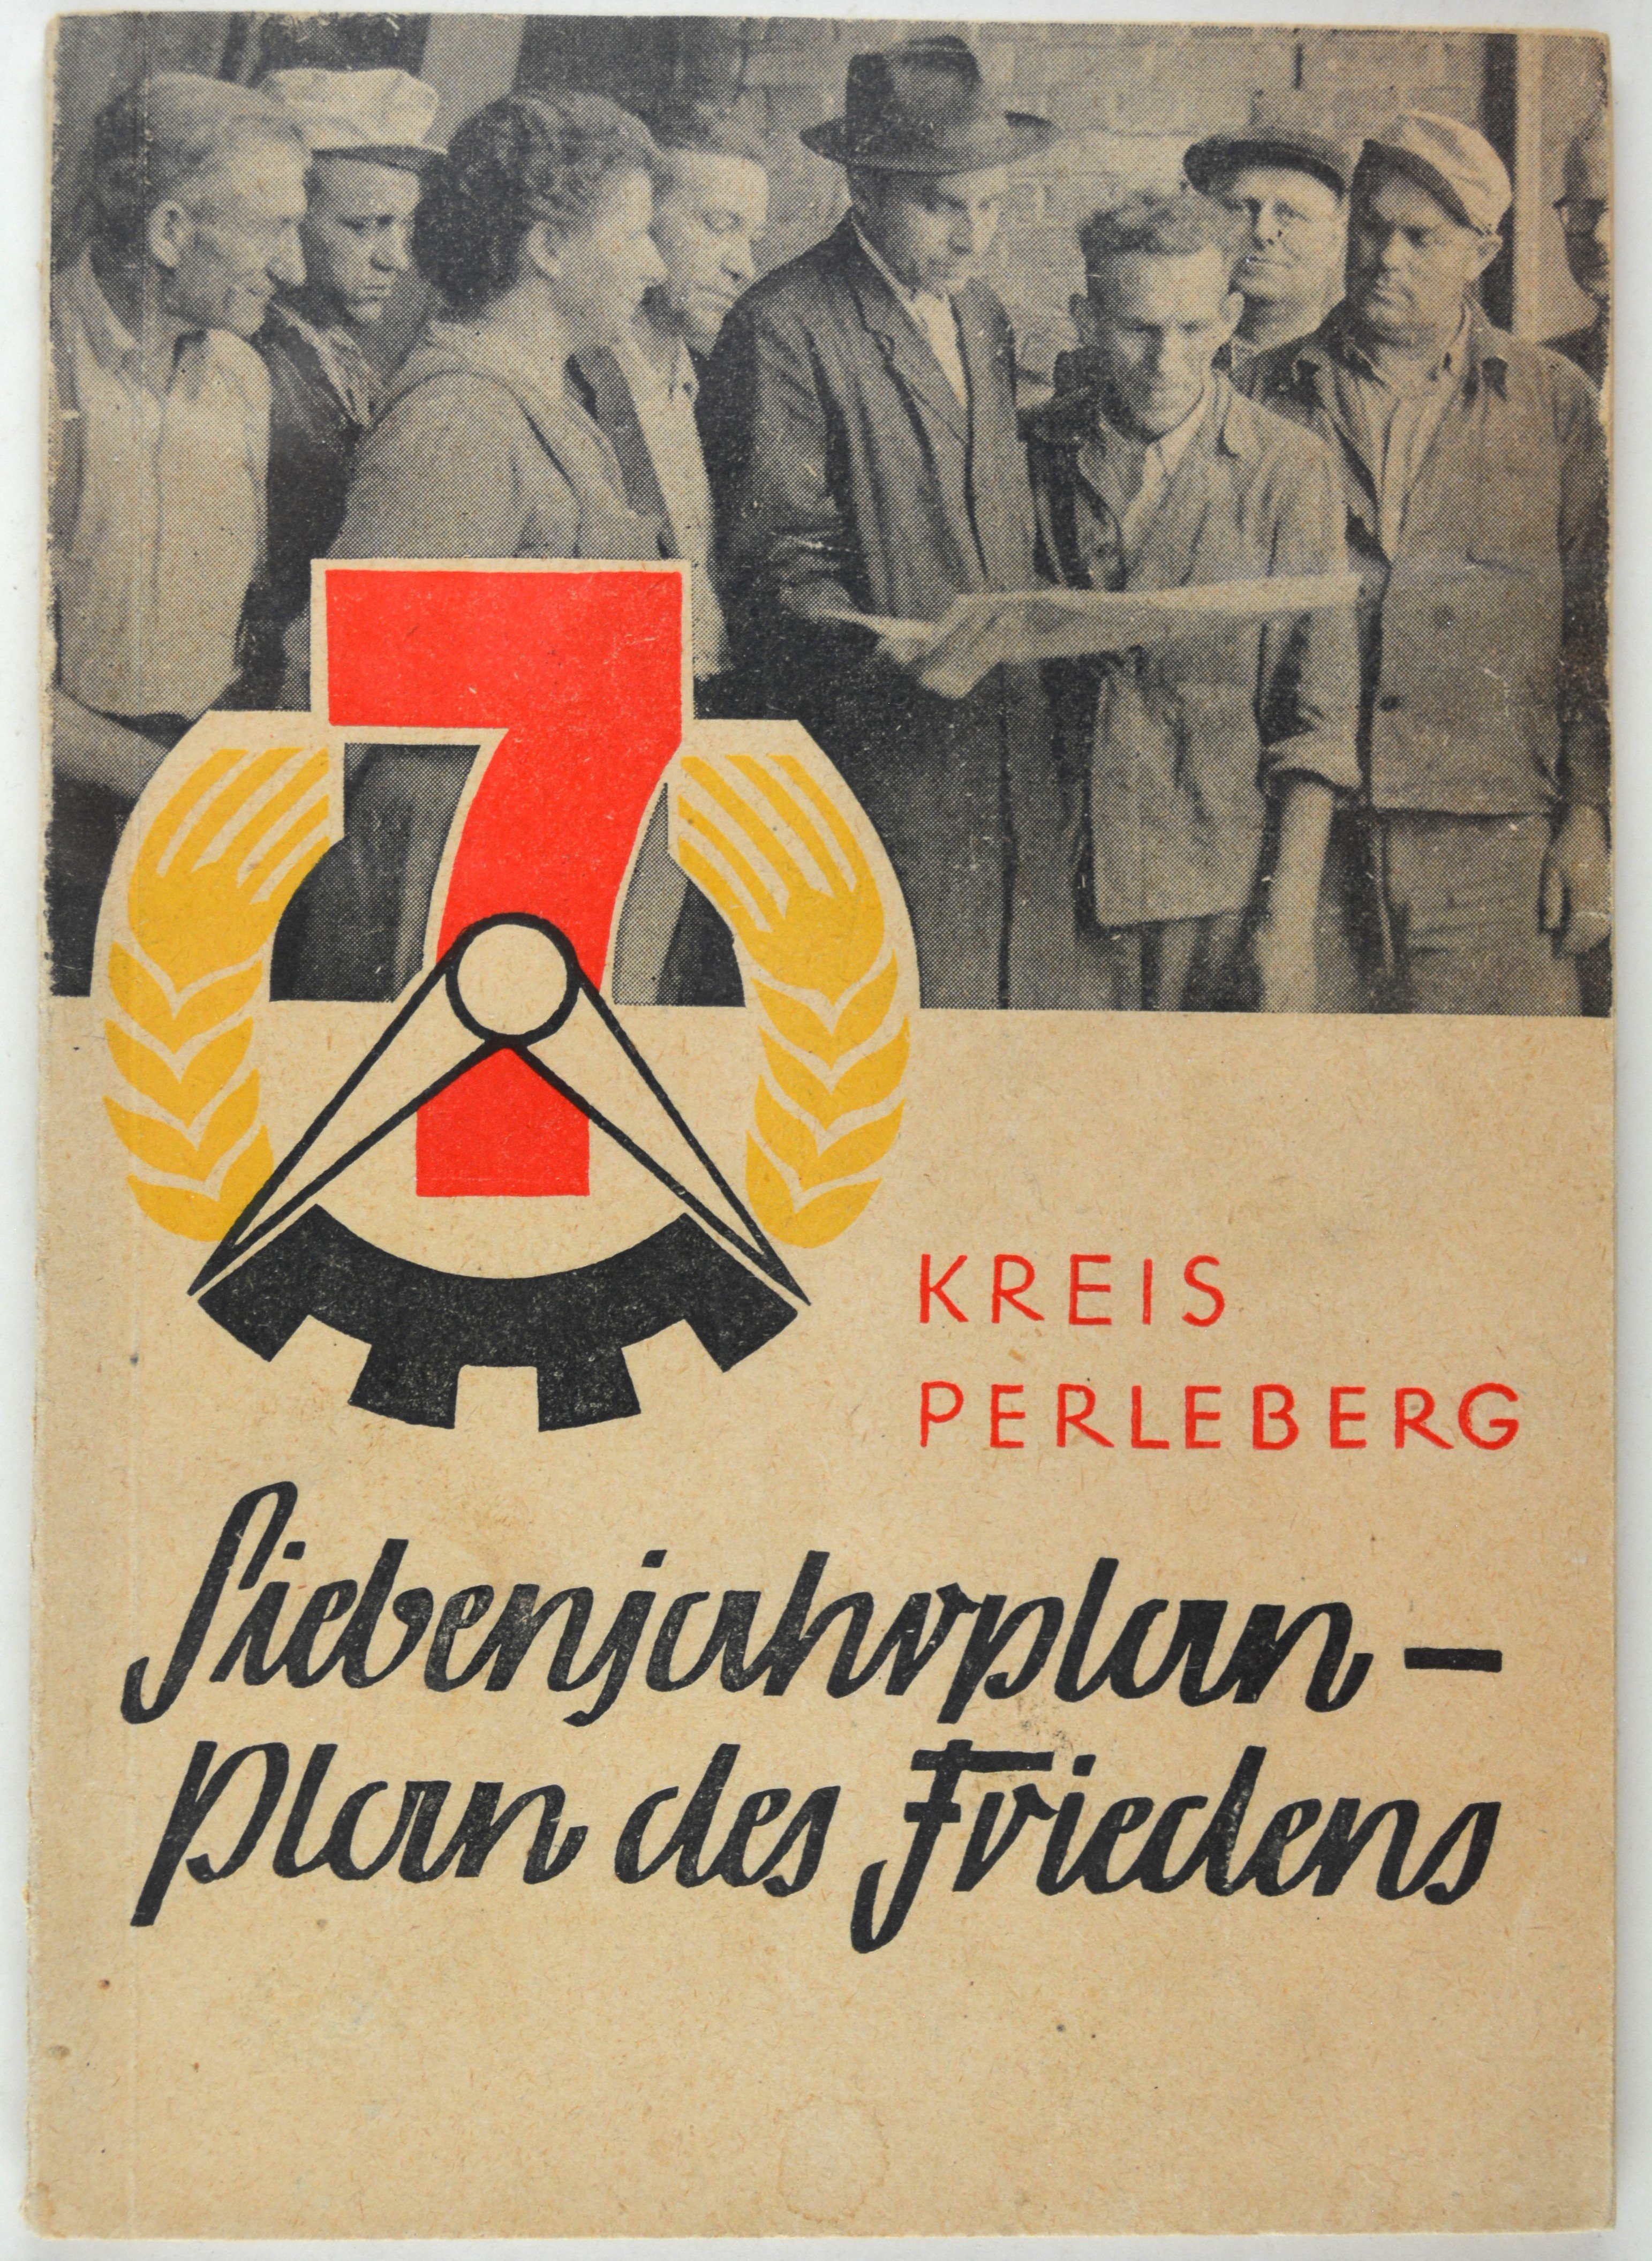 Broschüre: Siebenjahrplan - Plan des Friedens (DDR Geschichtsmuseum im Dokumentationszentrum Perleberg CC BY-SA)